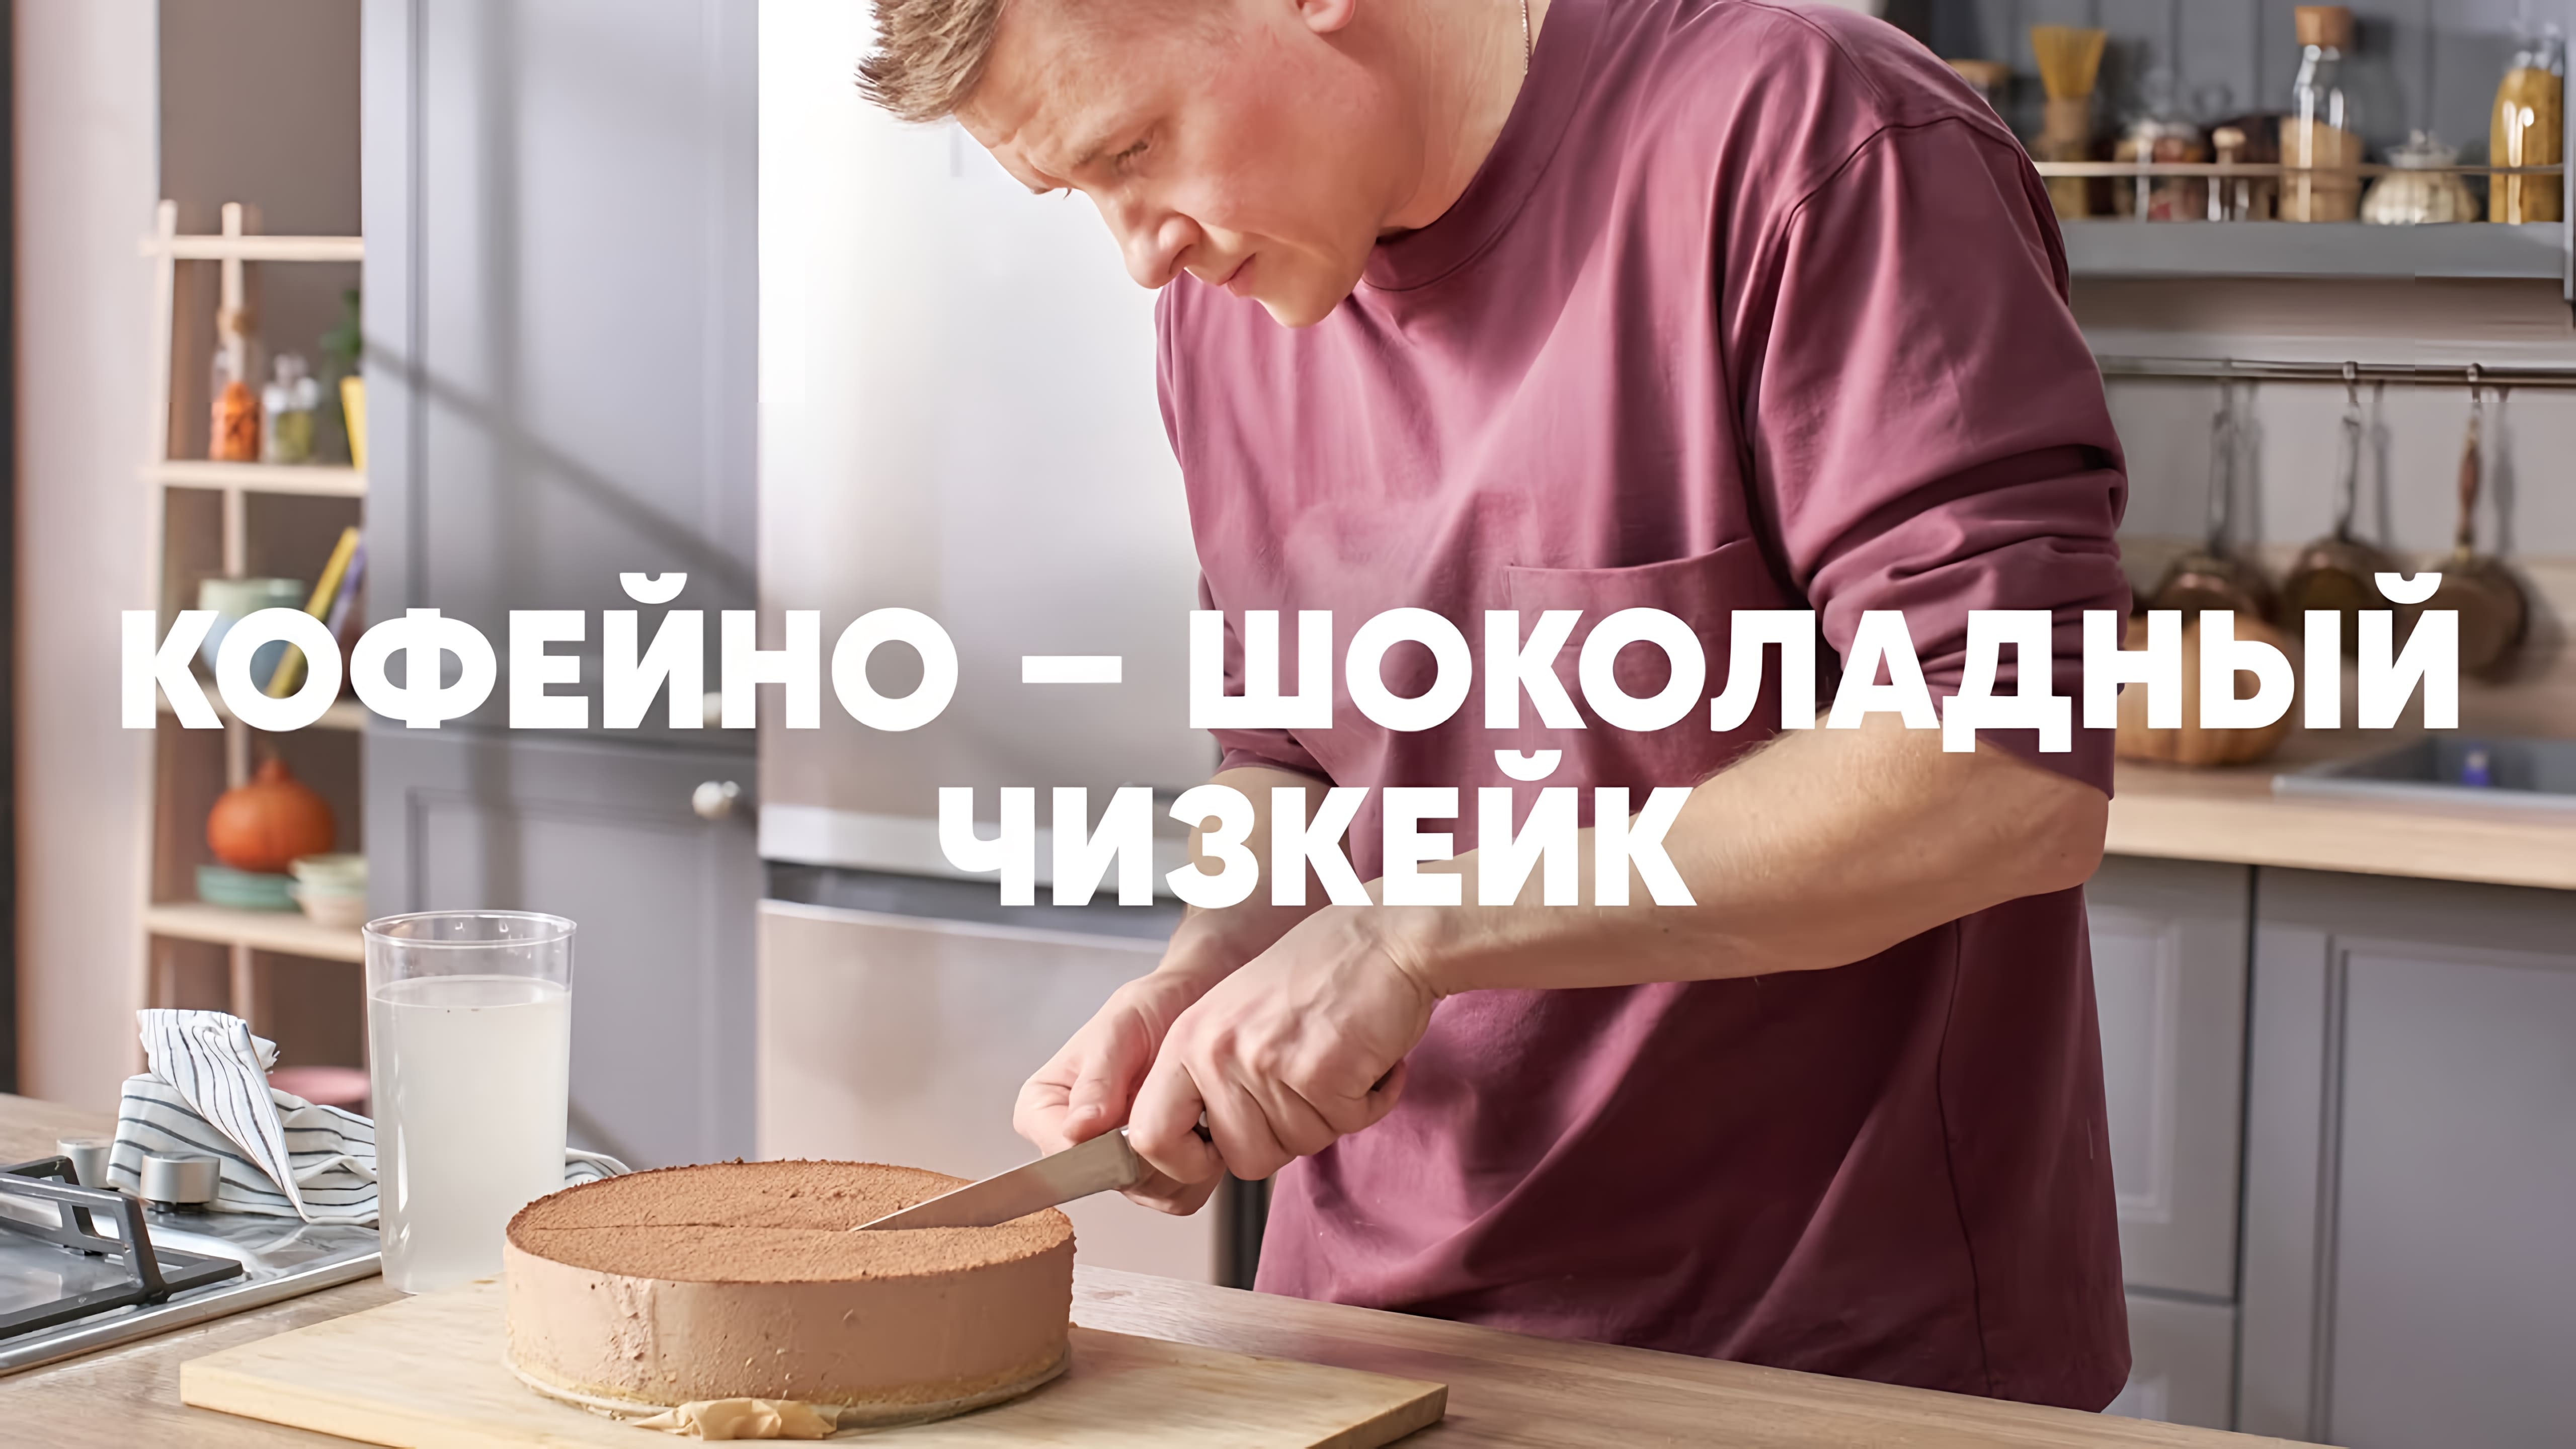 Видео: КОФЕЙНО-ШОКОЛАДНЫЙ ЧИЗКЕЙК — рецепт от шефа Бельковича | ПроСто кухня |